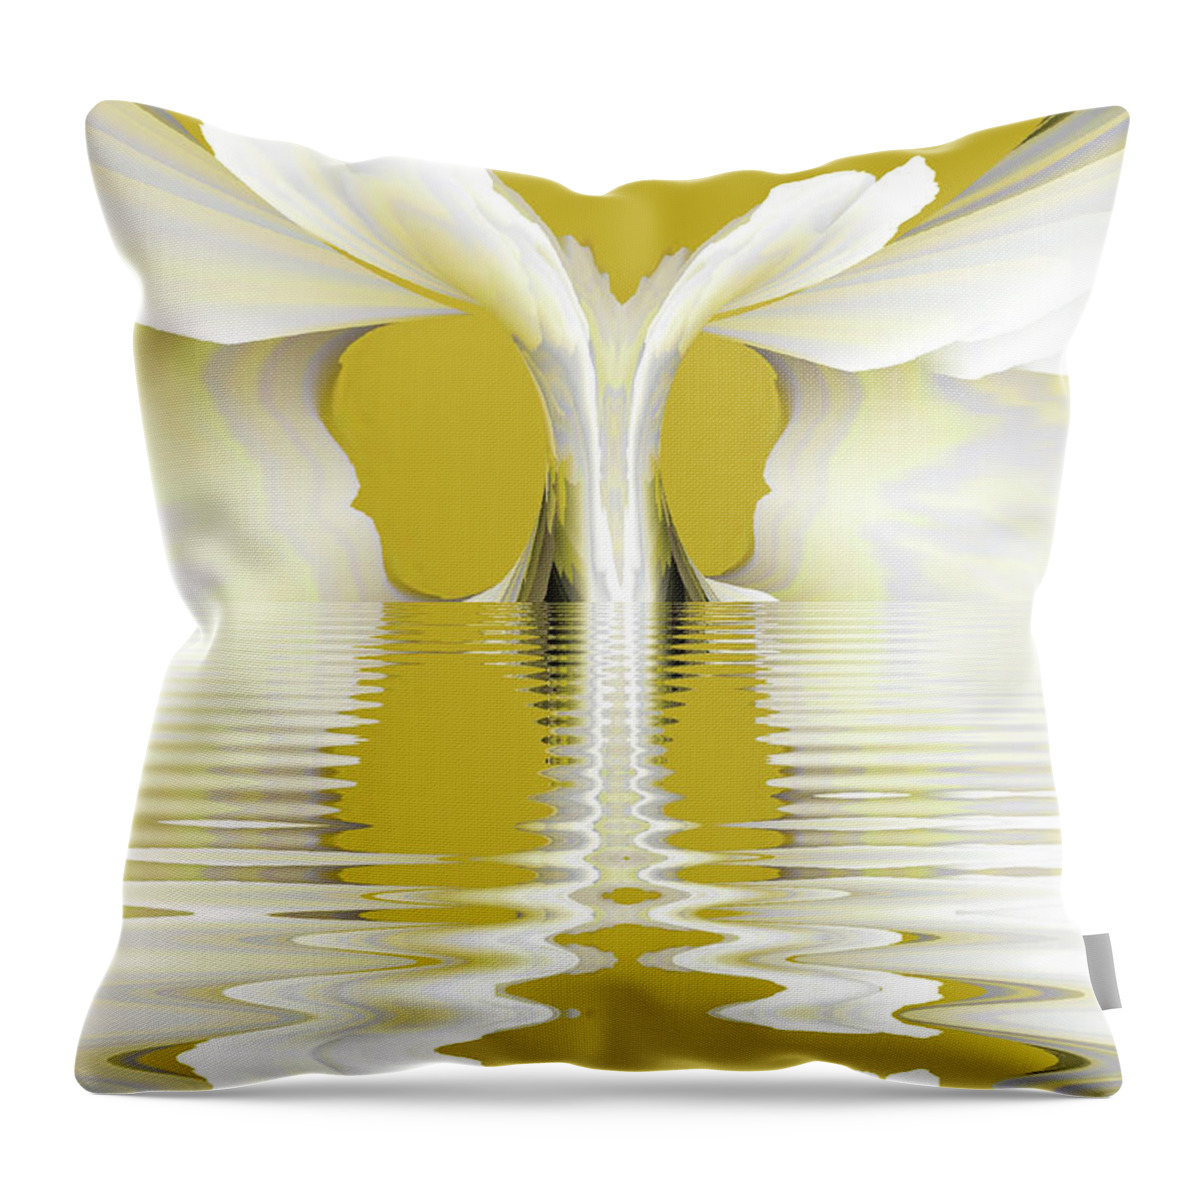 Art Throw Pillow featuring the digital art Emergence by Alexandra Vusir